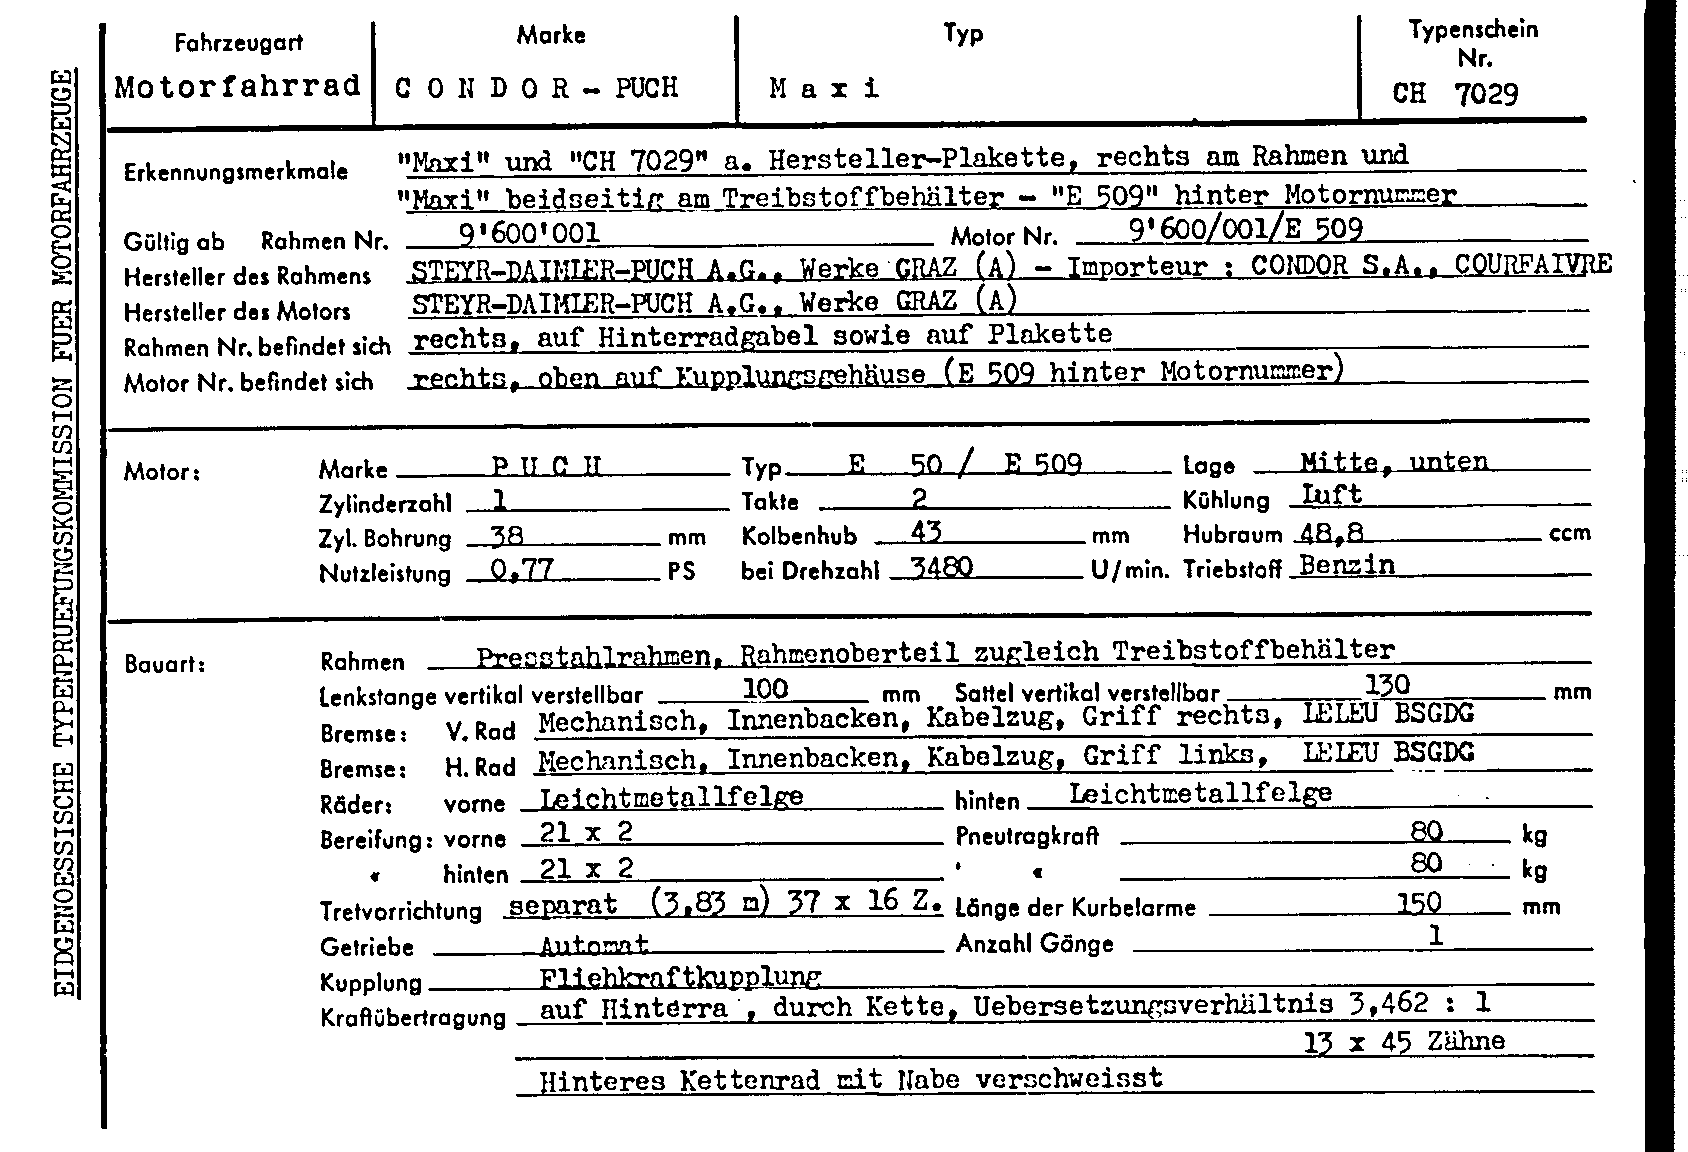 Swiss Certificate of Conformity 7029 German Page 1 (TG.DE.7029.1.png)